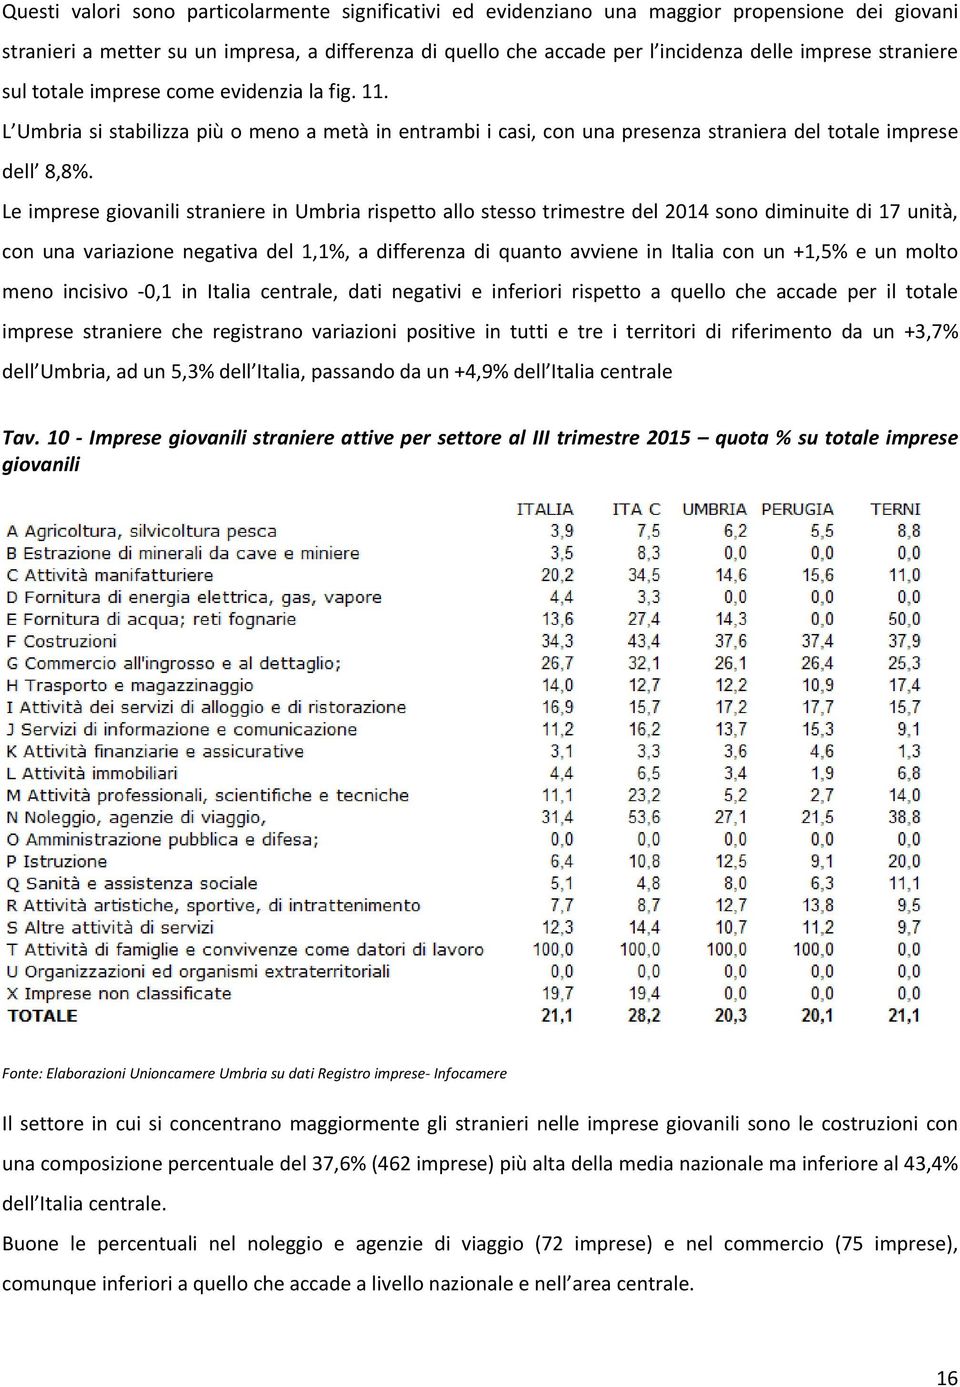 Le imprese giovanili straniere in Umbria rispetto allo stesso trimestre del 2014 sono diminuite di 17 unità, con una variazione negativa del 1,1%, a differenza di quanto avviene in Italia con un